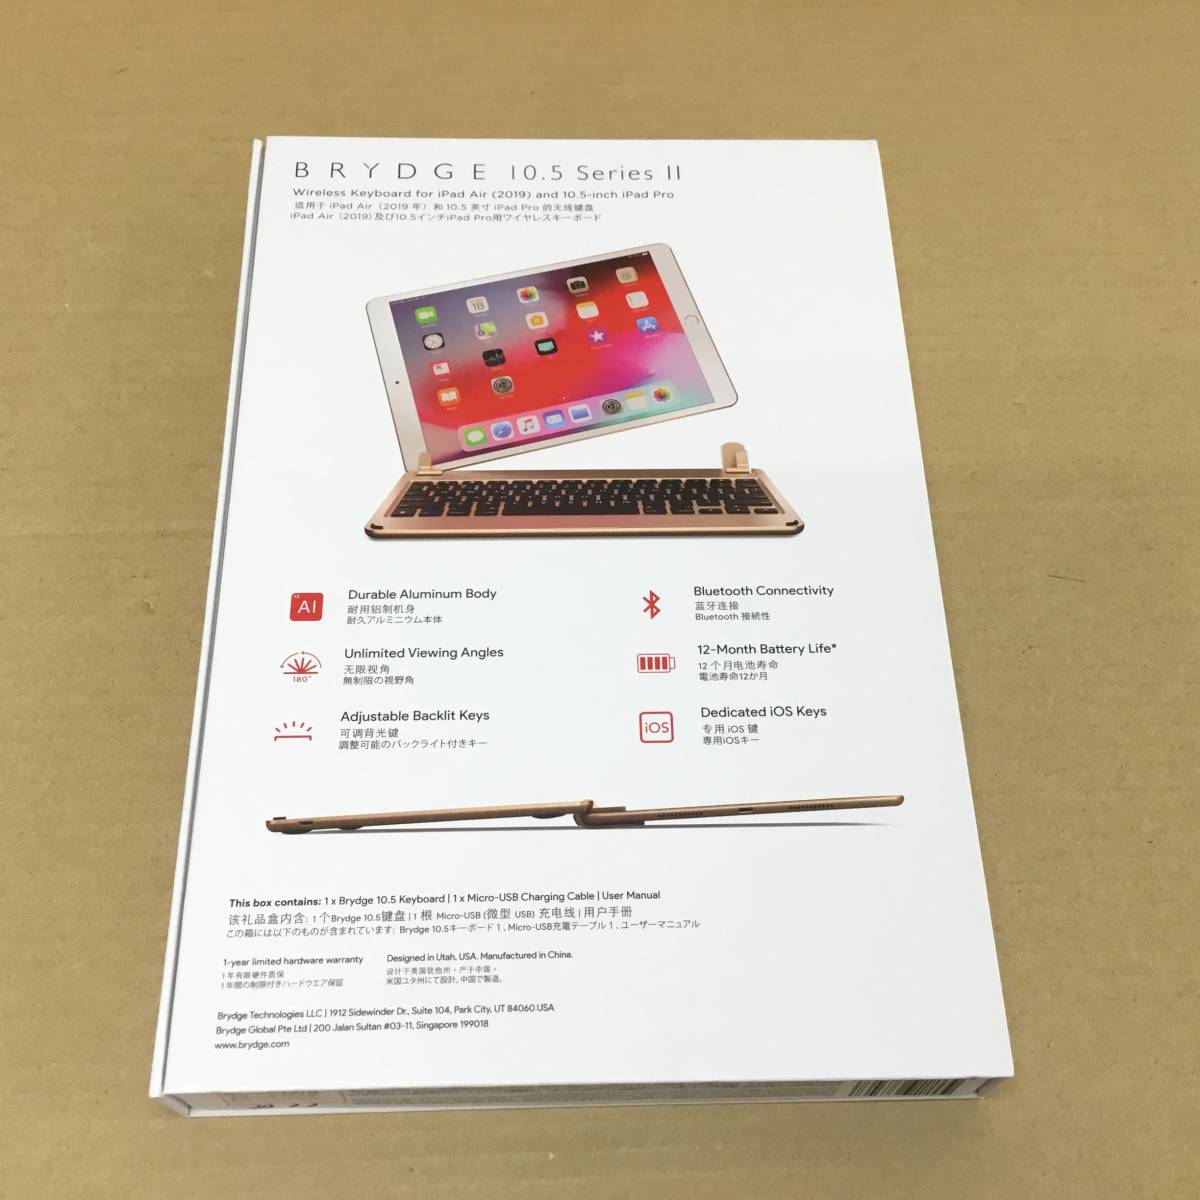 【2310178603】未使用品 BRYDGE iPad Air(2019)/10.5-inch iPad Pro用ワイヤレスキーボード BRY8003-CJP ゴールド 日本語(JIS)配列_画像4